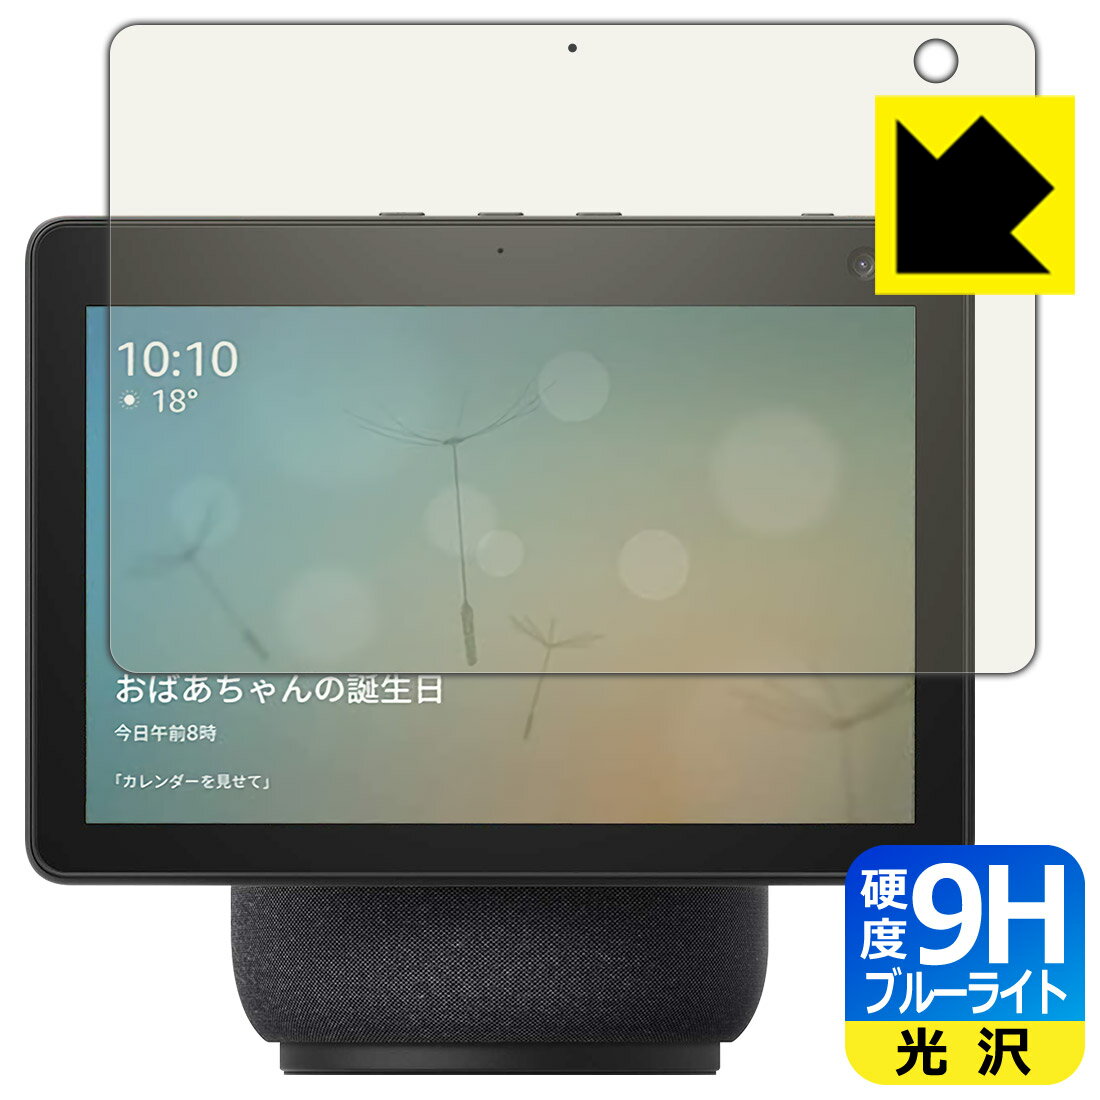 9H高硬度【ブルーライトカット】保護フィルム Amazon Echo Show 10 (第3世代 2021年4月発売モデル) 日本製 自社製造直販